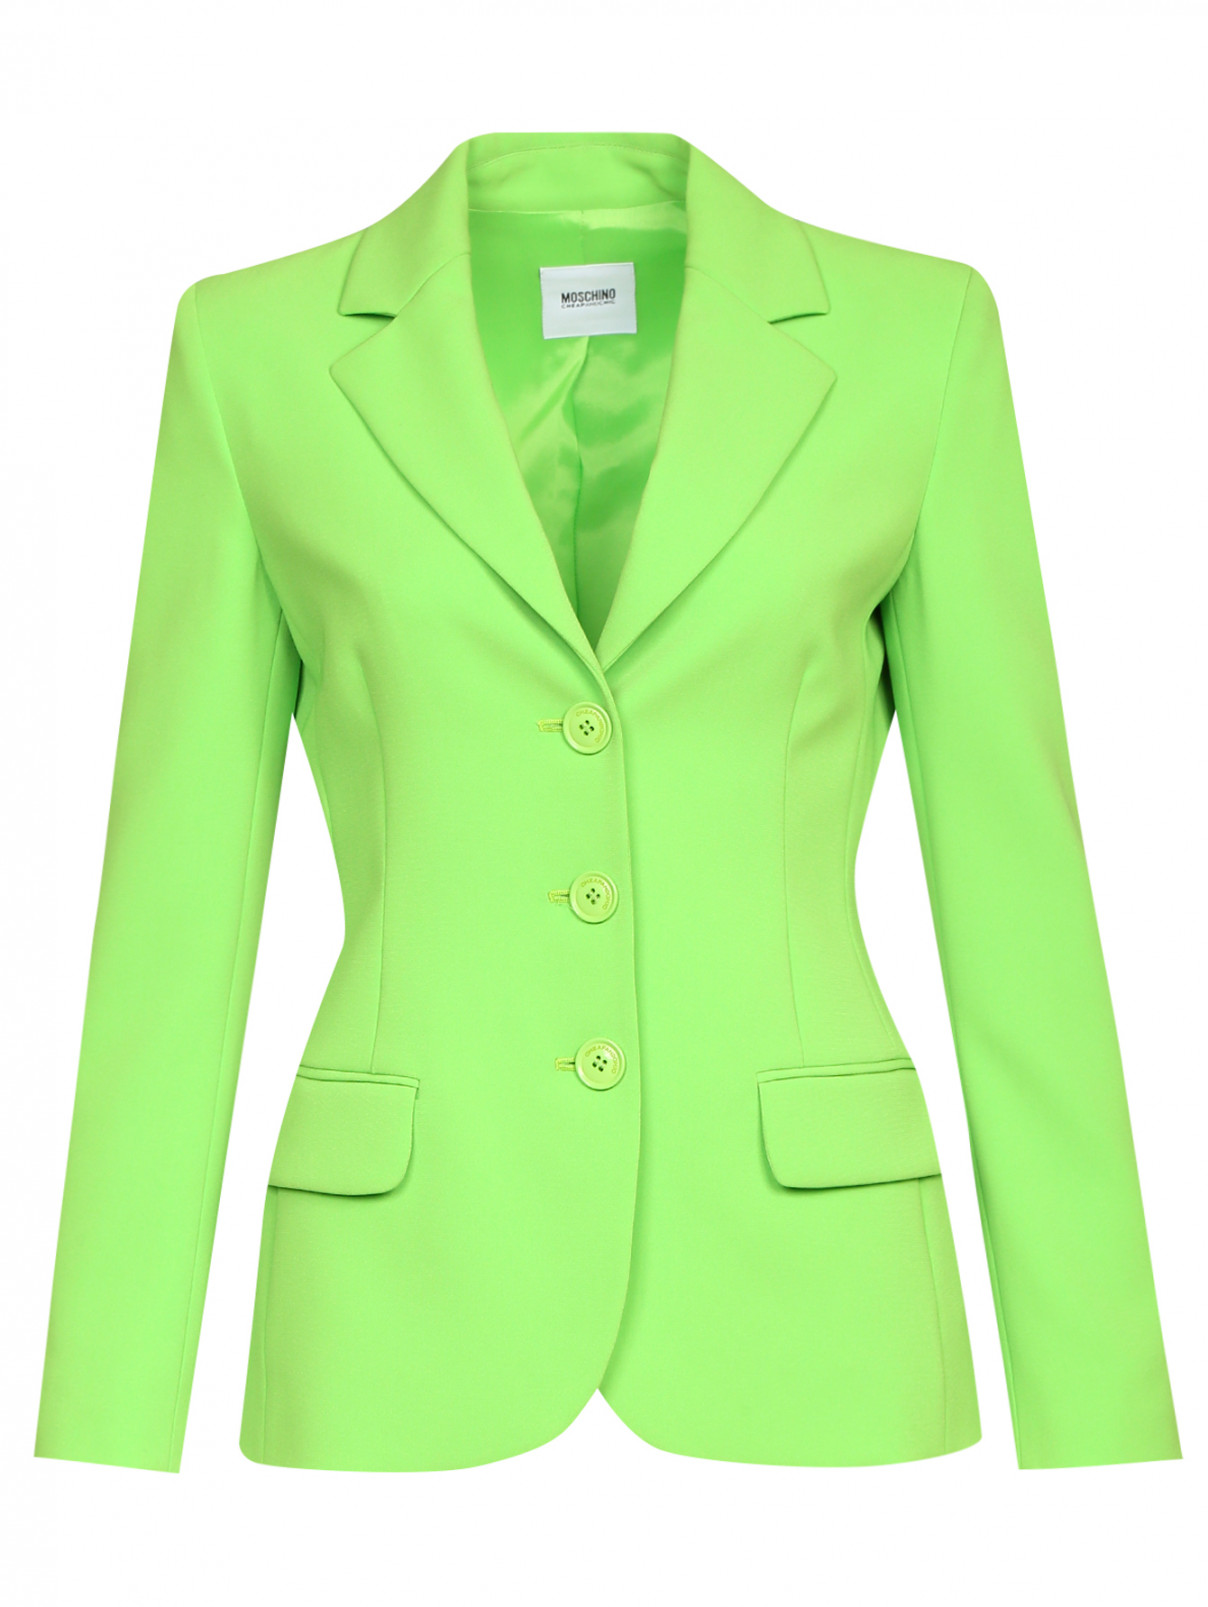 Однотонный жакет на пуговицах Moschino Cheap&Chic  –  Общий вид  – Цвет:  Зеленый